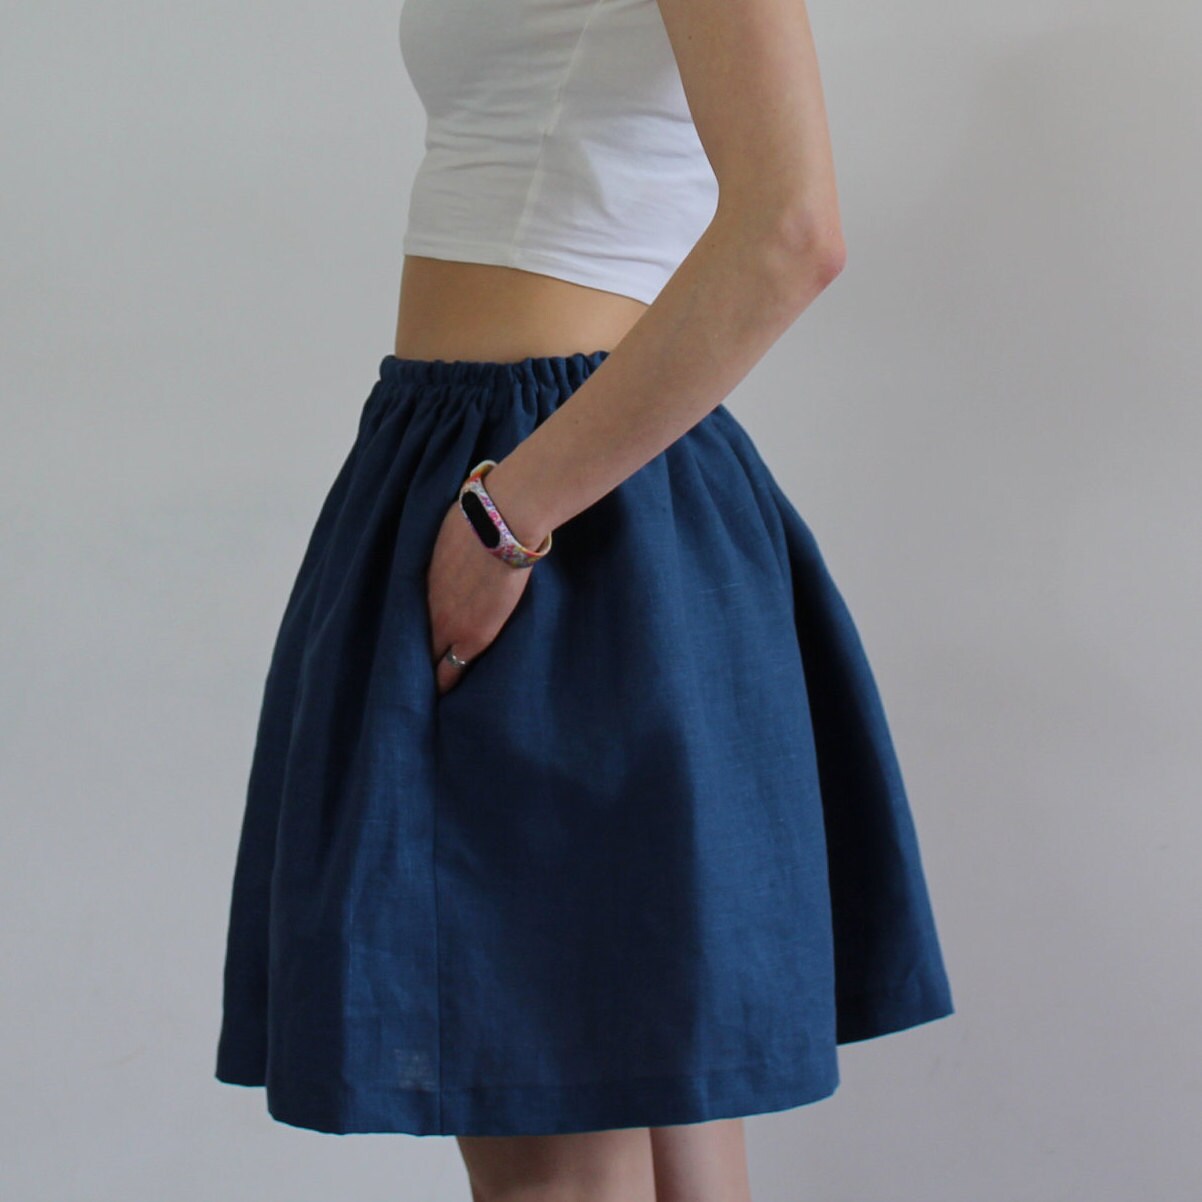 Linen skirt/ Linen midi skirt/ Summer skirt/ Casual skirt/ | Etsy